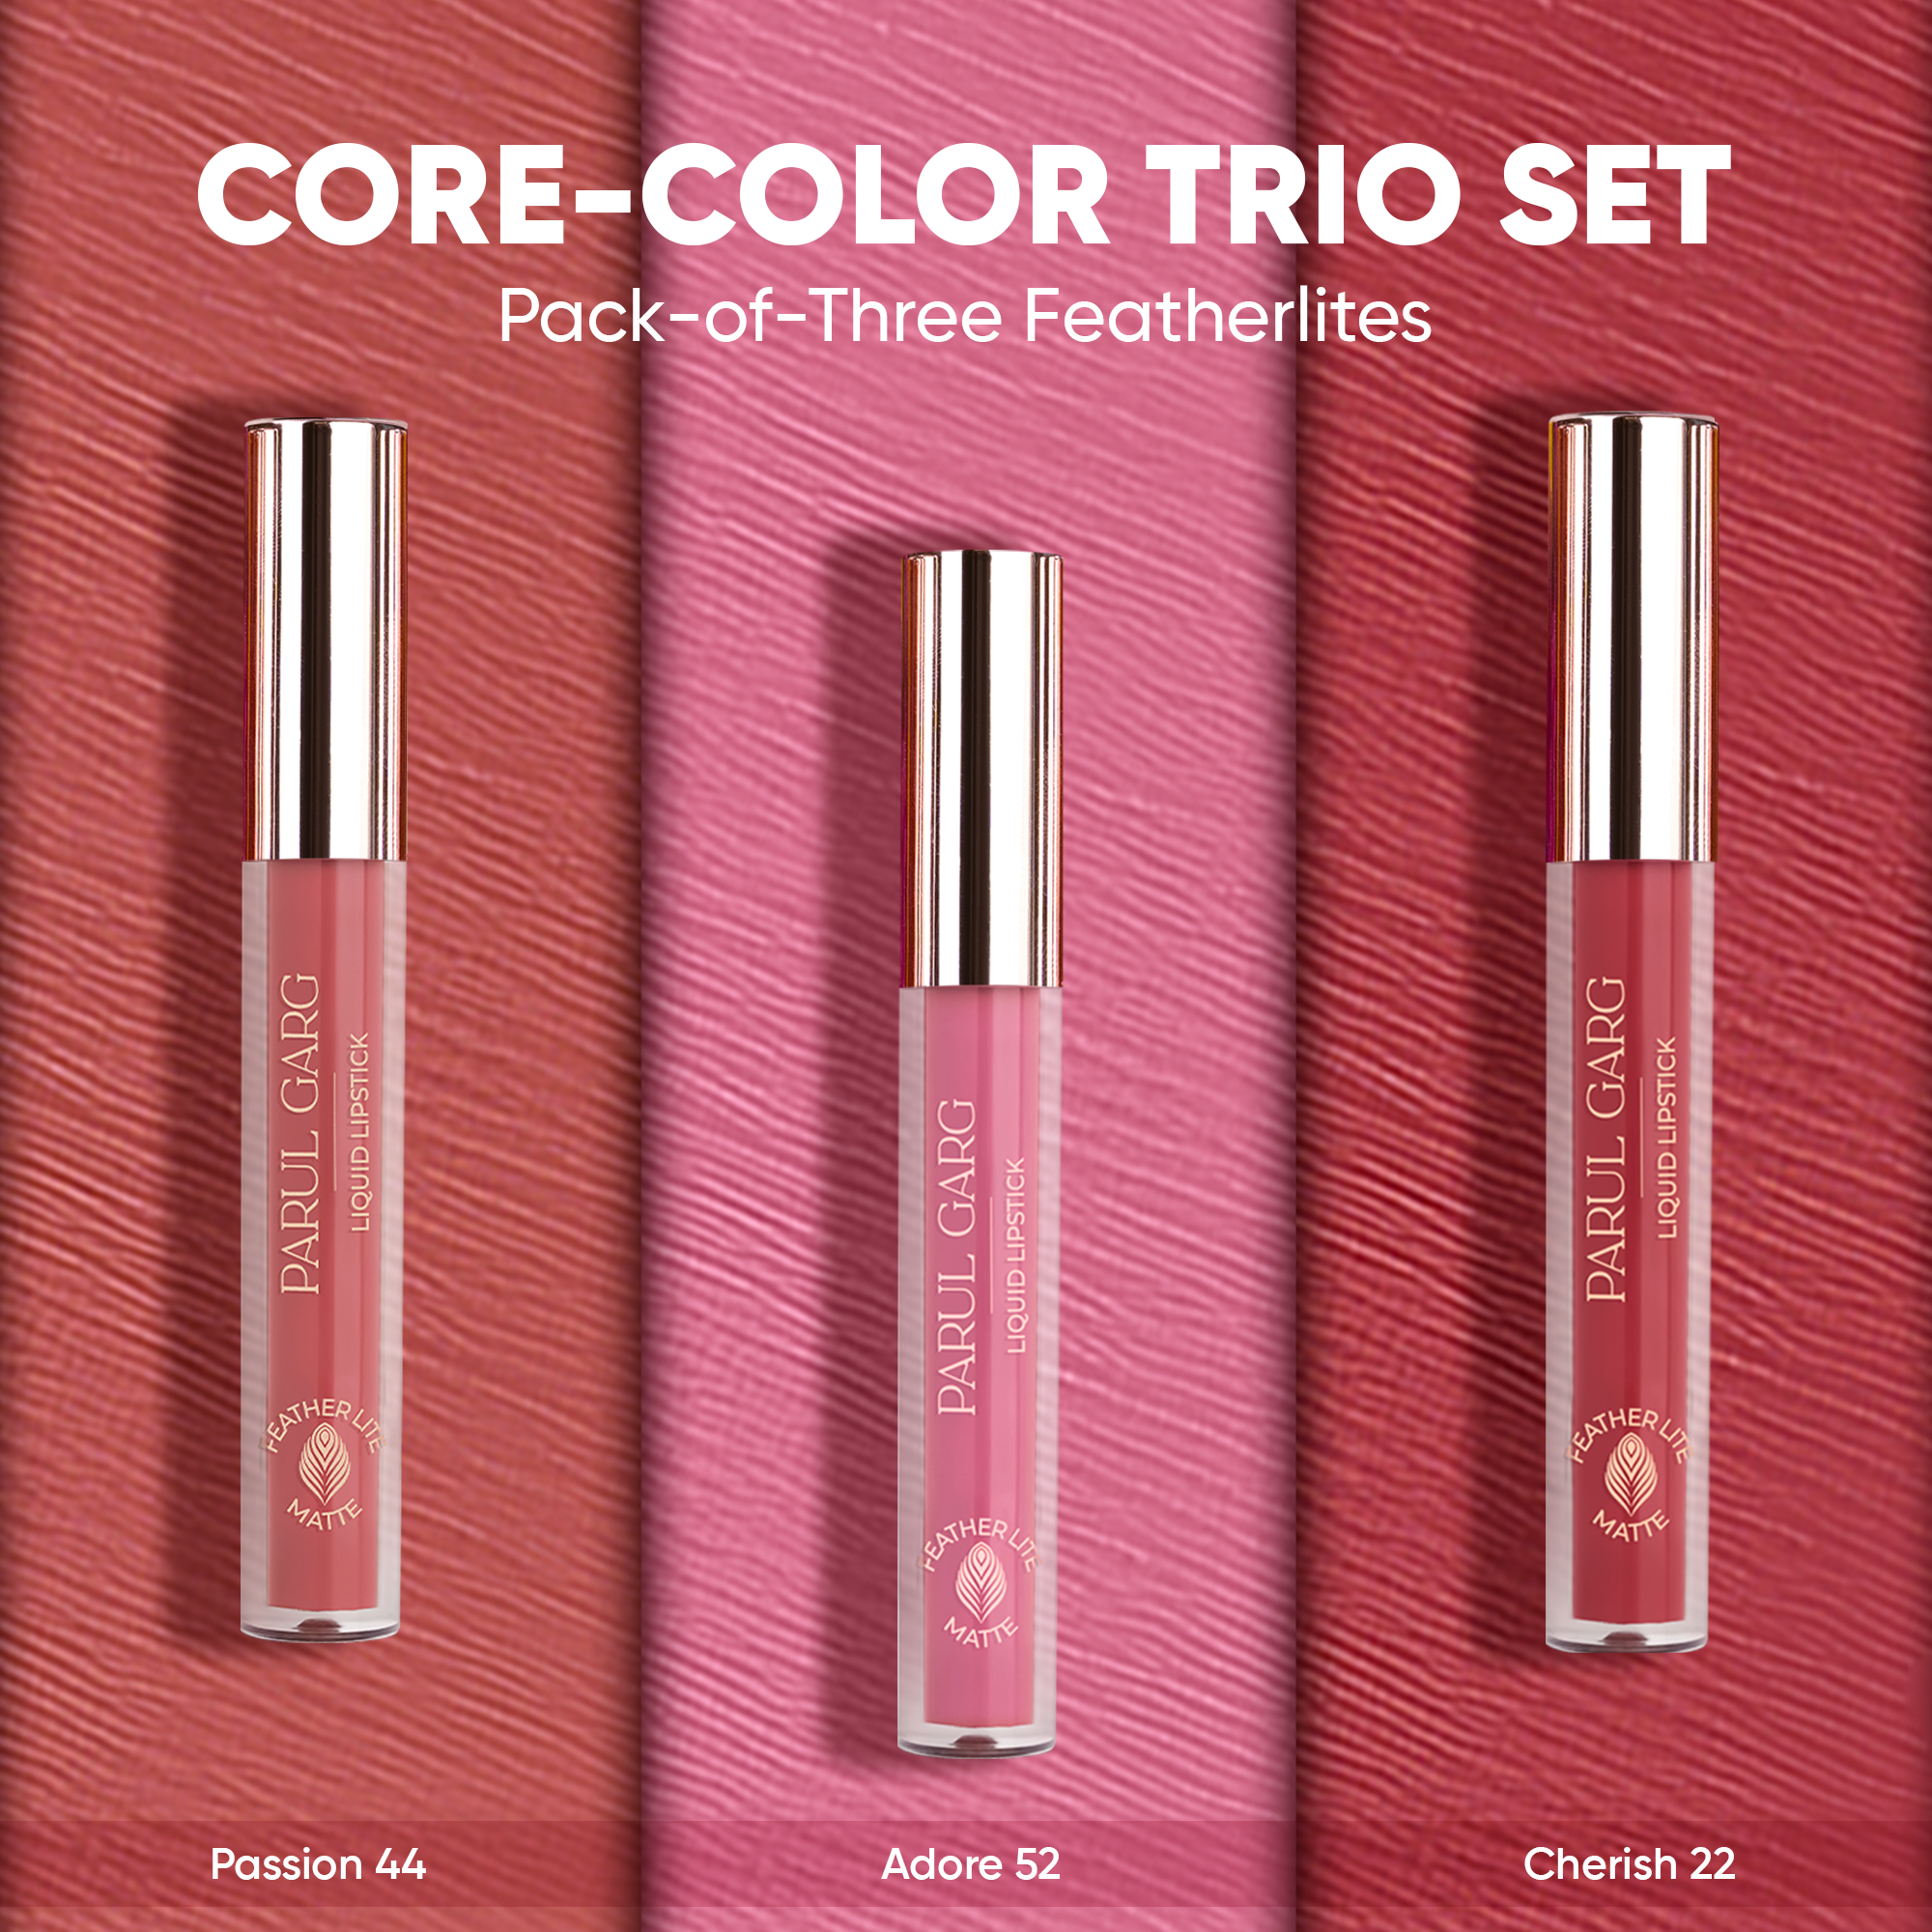 Core-Color Trio Set: Pack-of-Three Featherlites Liquid Lipsticks